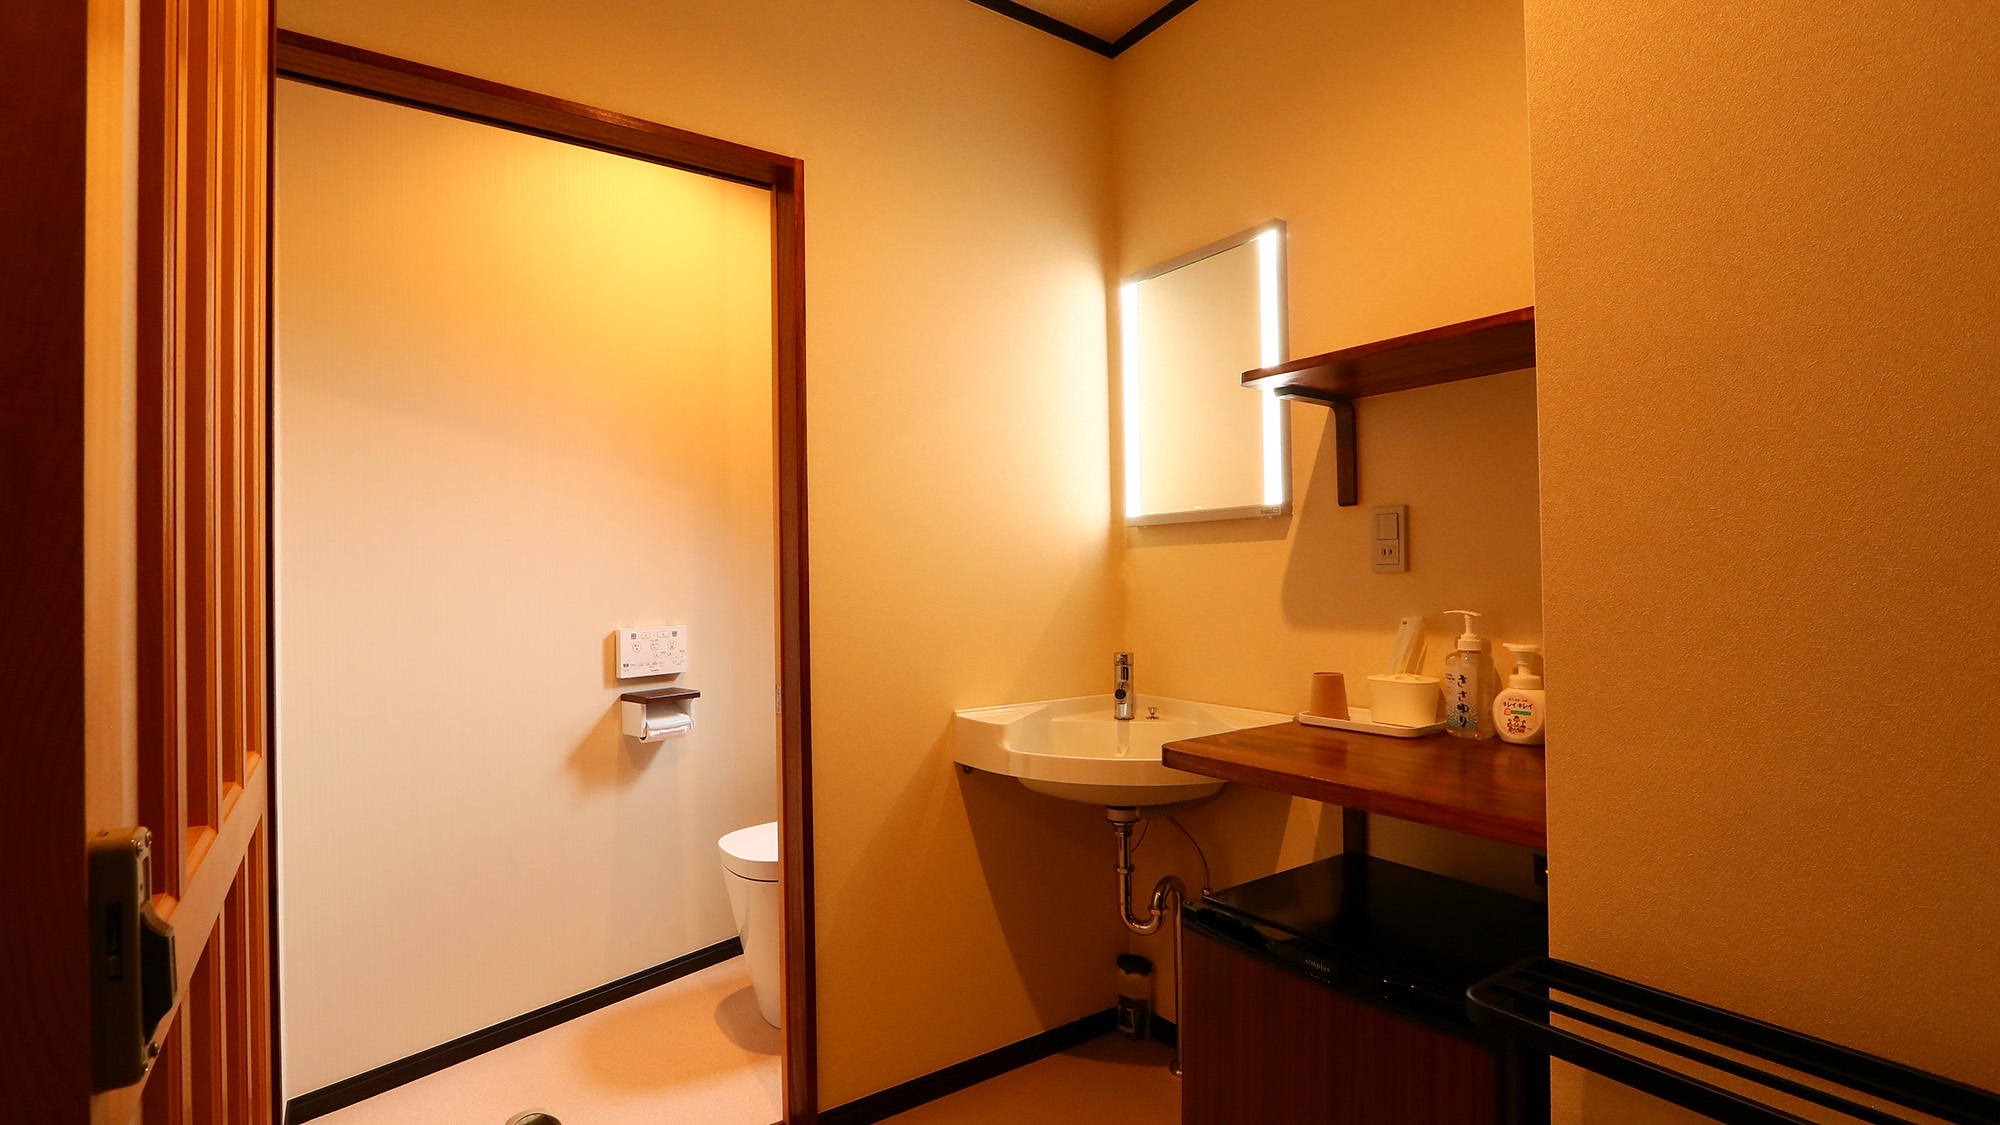 9−10畳の客室はウォシュレットトイレ&洗面付き